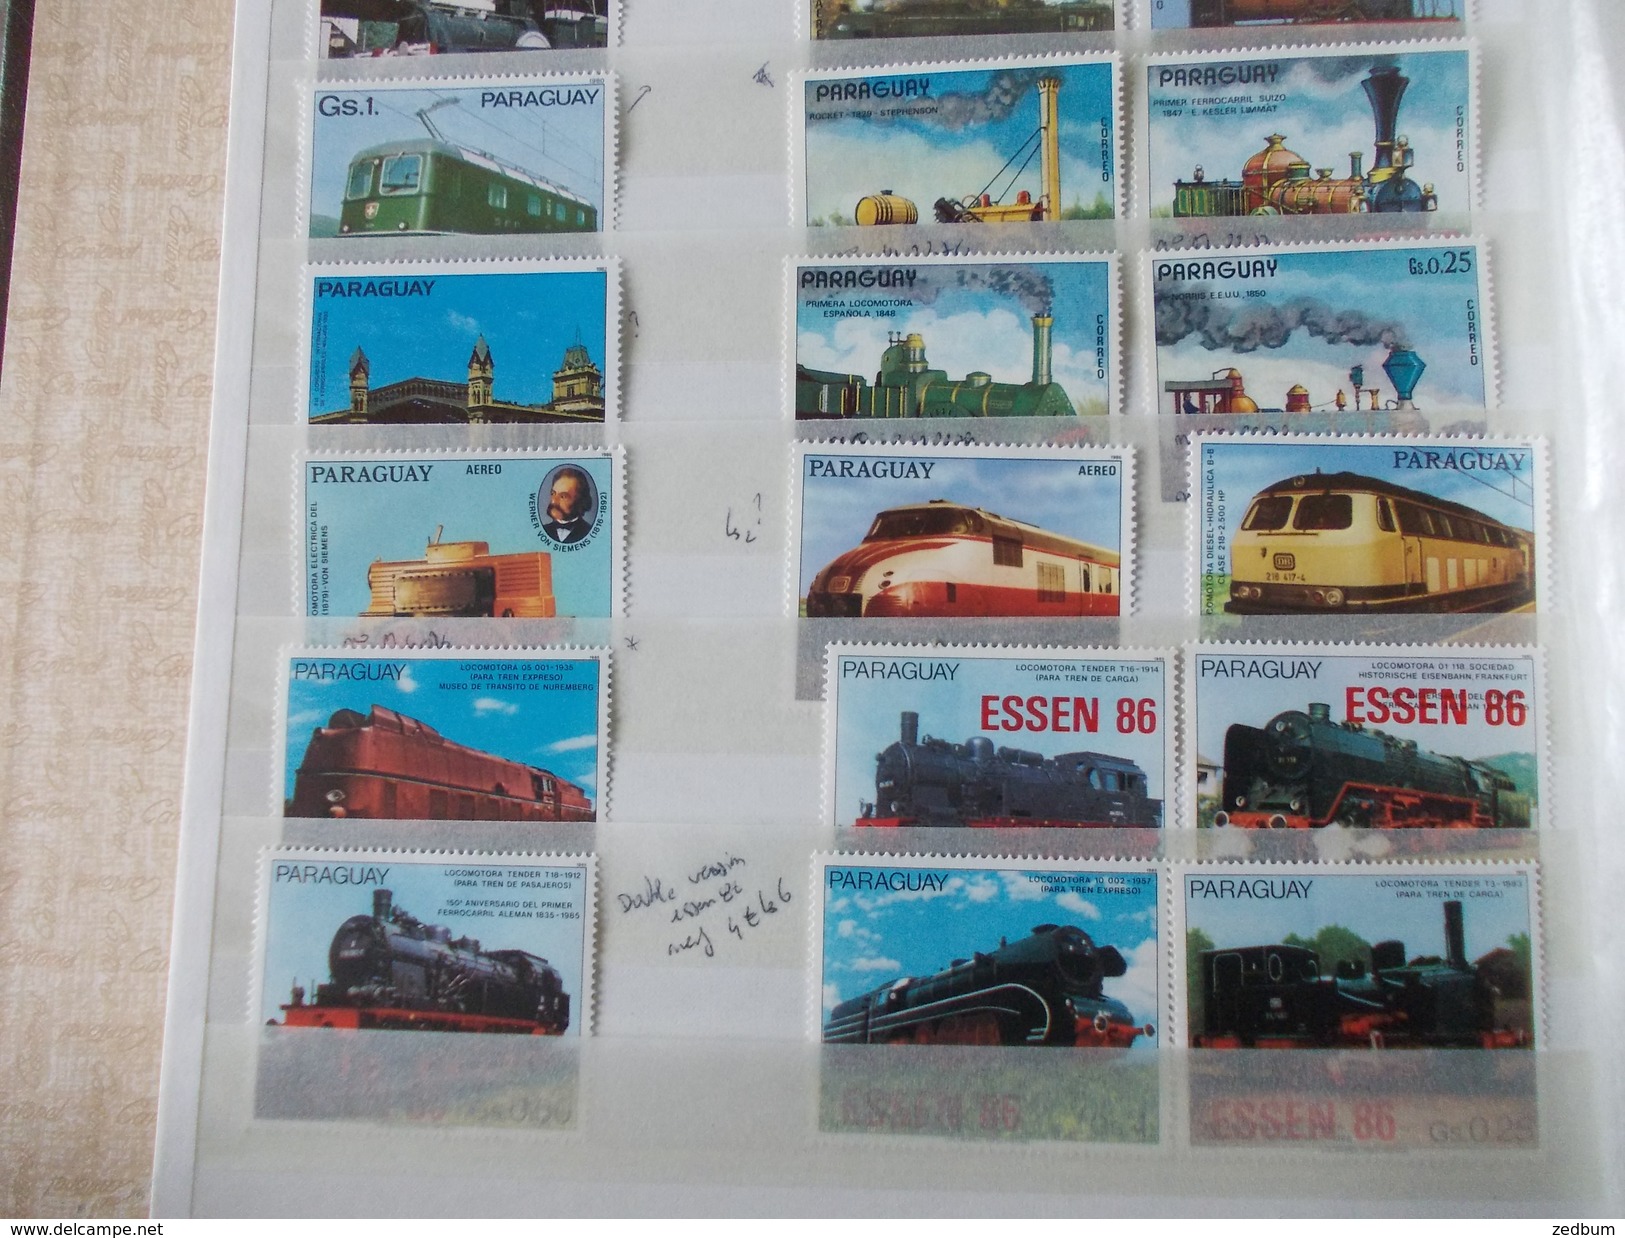 ALBUM 8 collection de timbres avec pour thème le chemin de fer train de tout pays valeur 247.50 &euro;